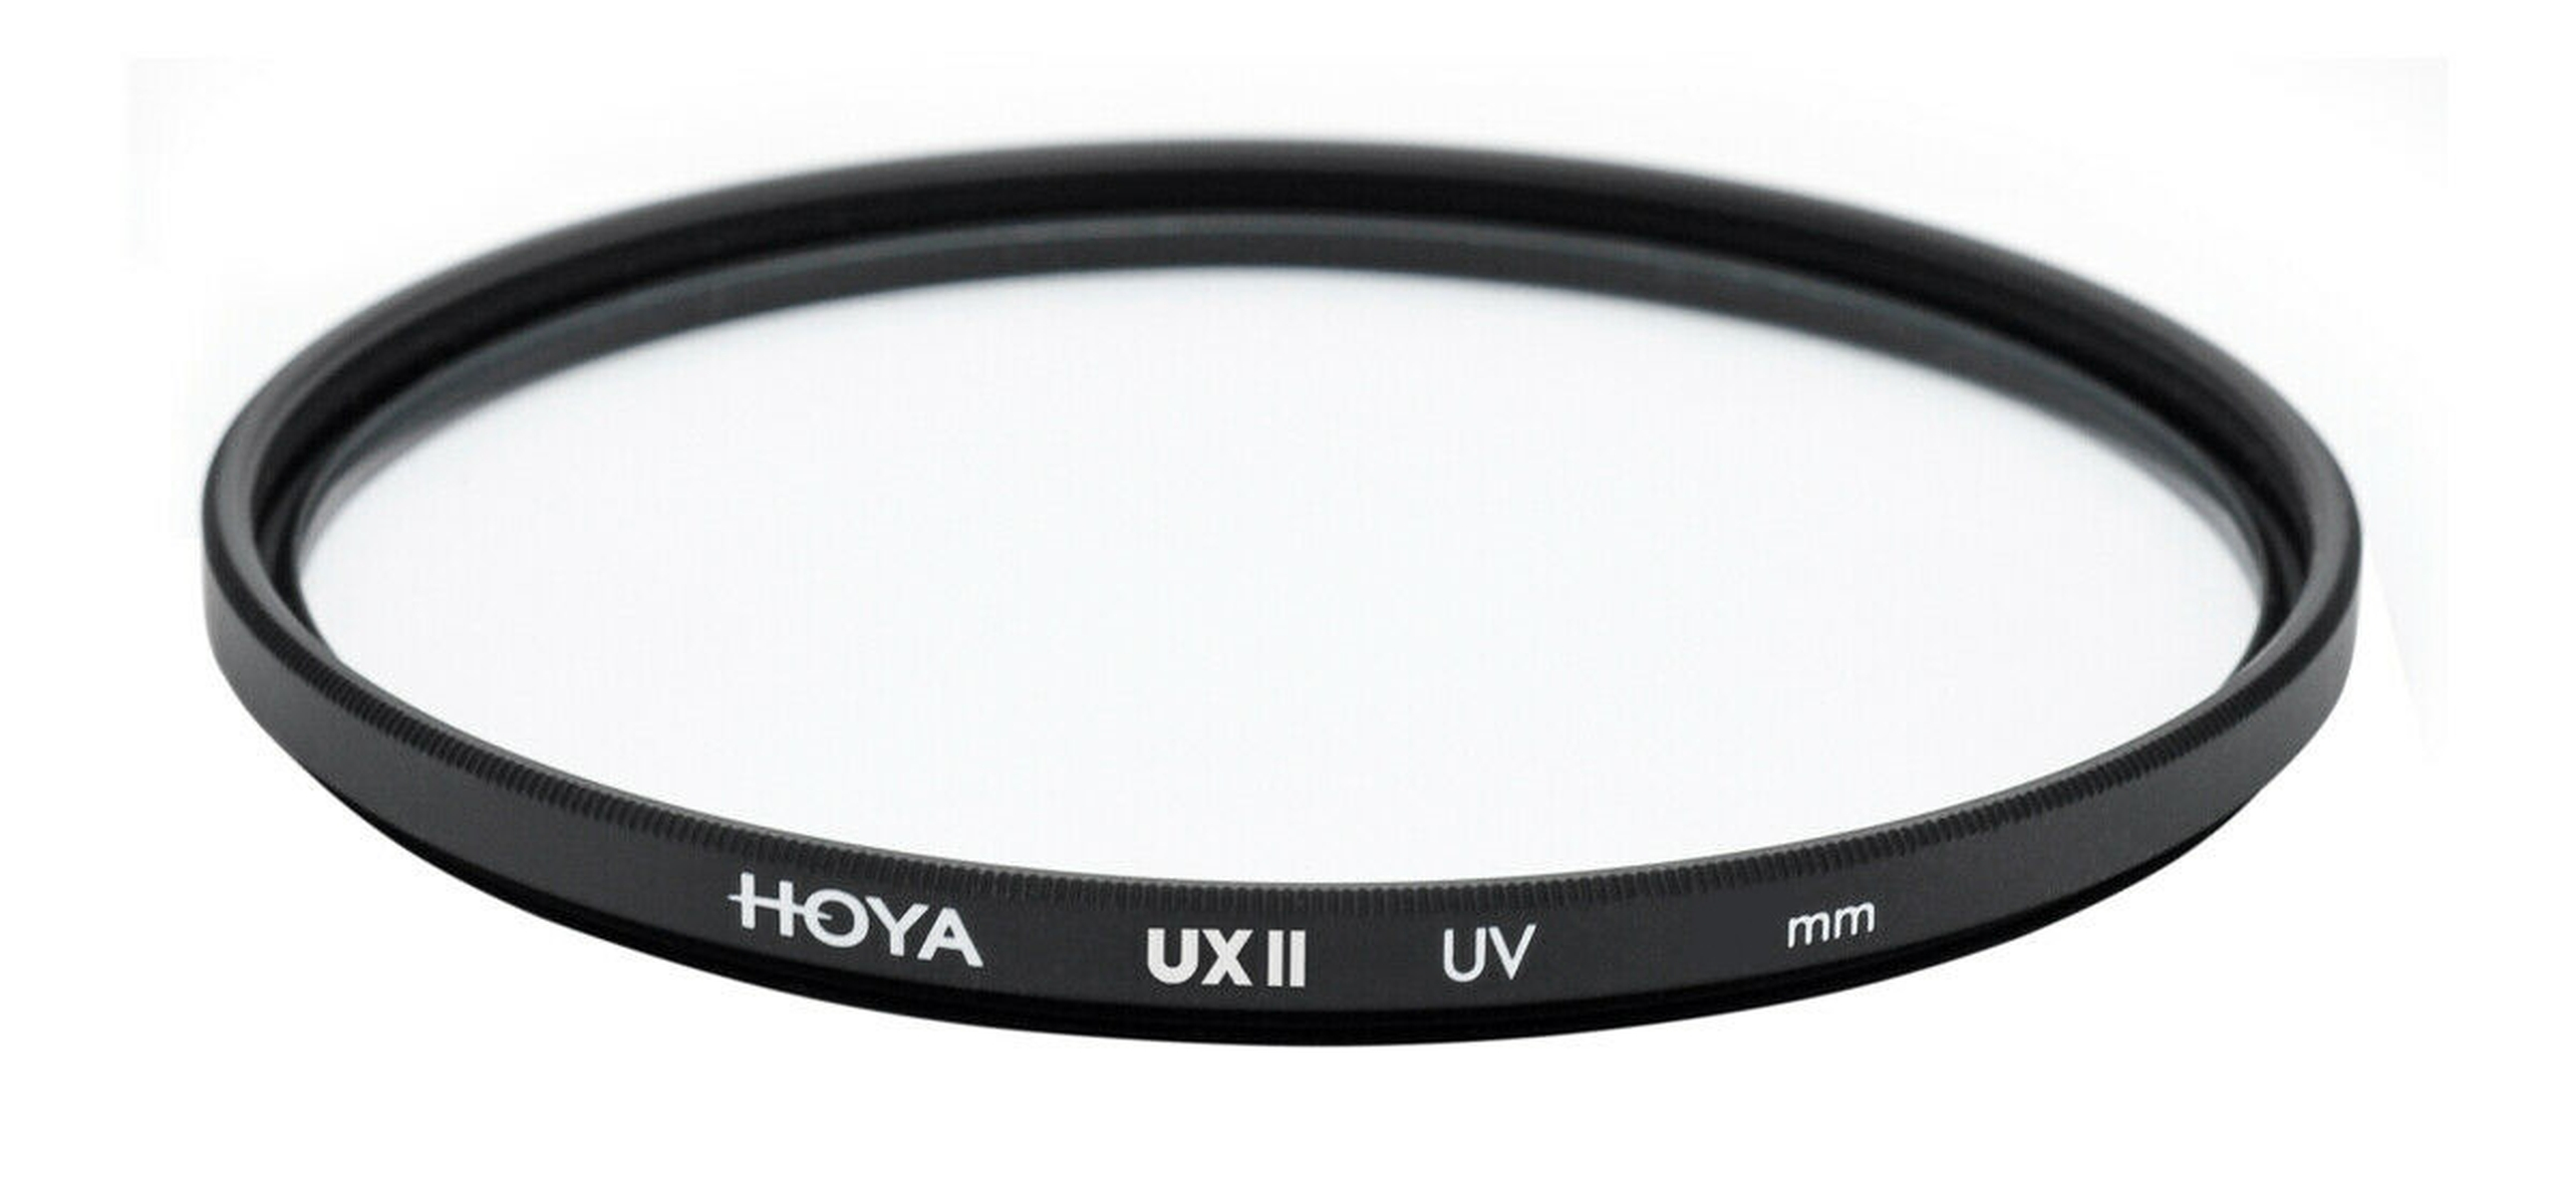 HOYA UX II UV mm 58 Filter